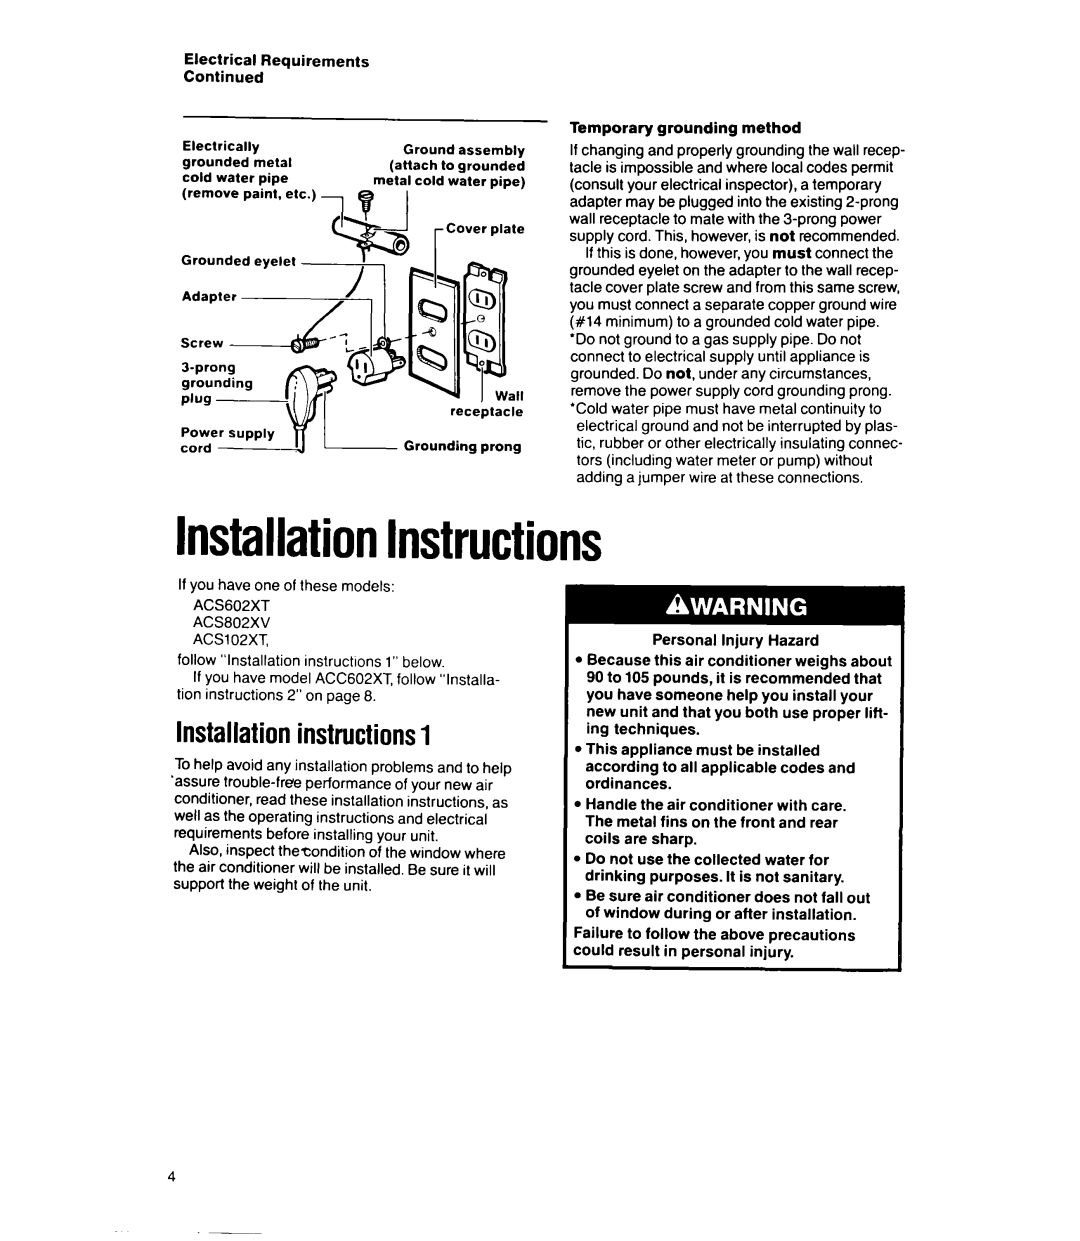 Whirlpool ACS602XT, ACSL02XT, ACS802XV, ACC602XT manual InstallationInstructions, Installationinstructions1 